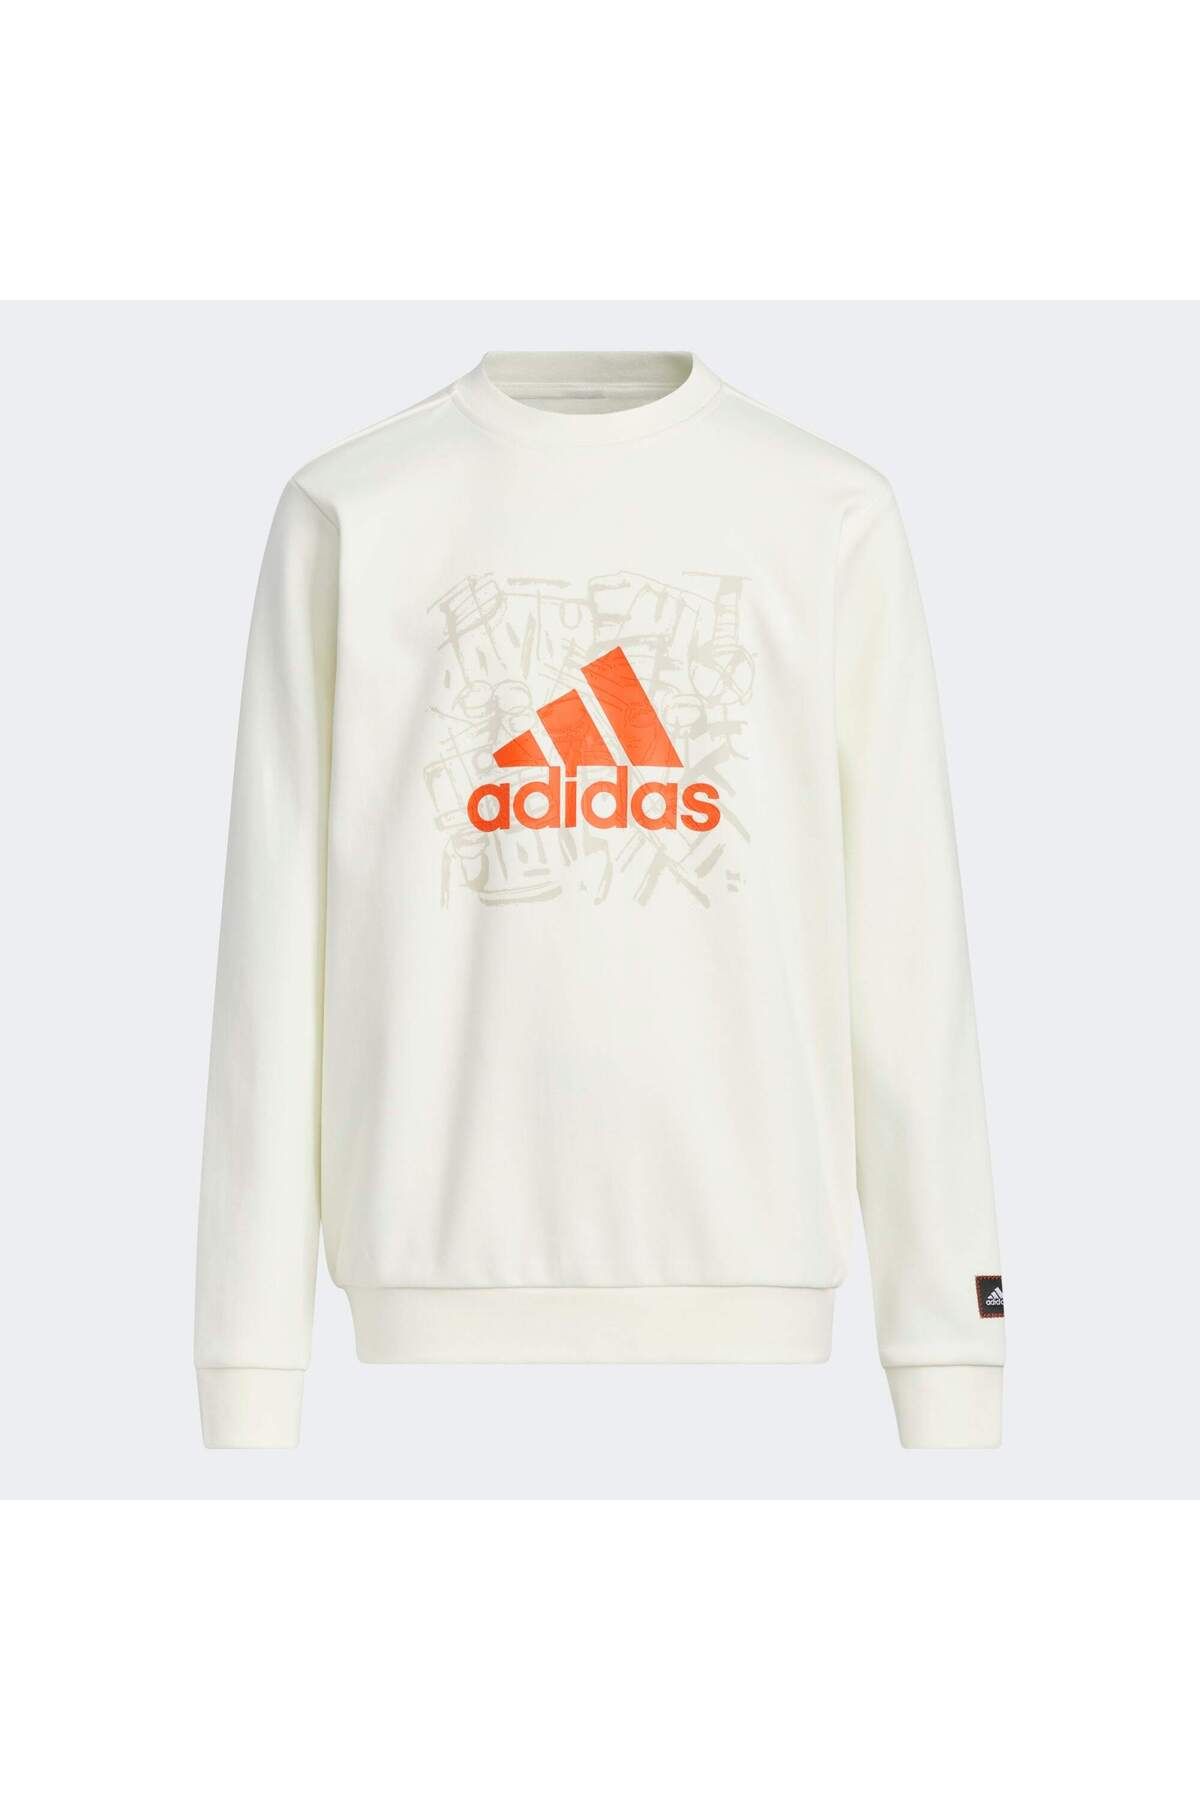 adidas Knit Crew Çocuk Beyaz Sweatshirt (HZ0218)